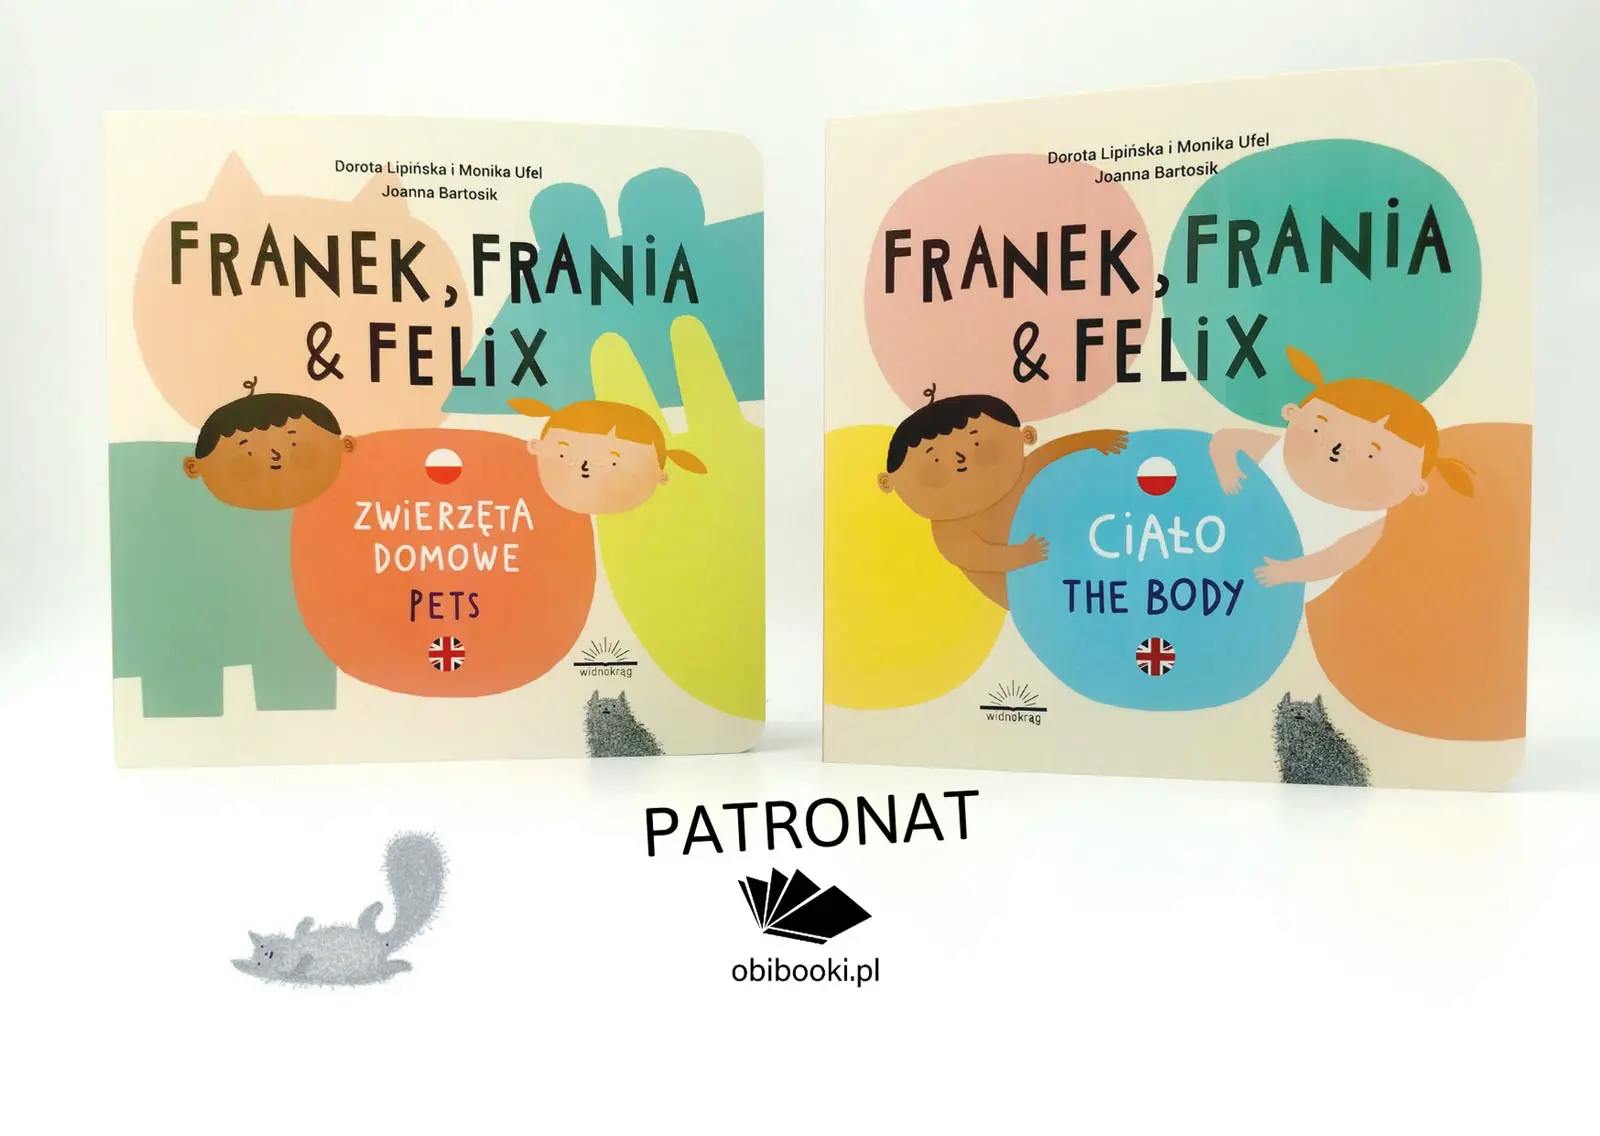 Franek, Frania & Felix - książki dla dzieci do nauki angielskiego. Recenzja